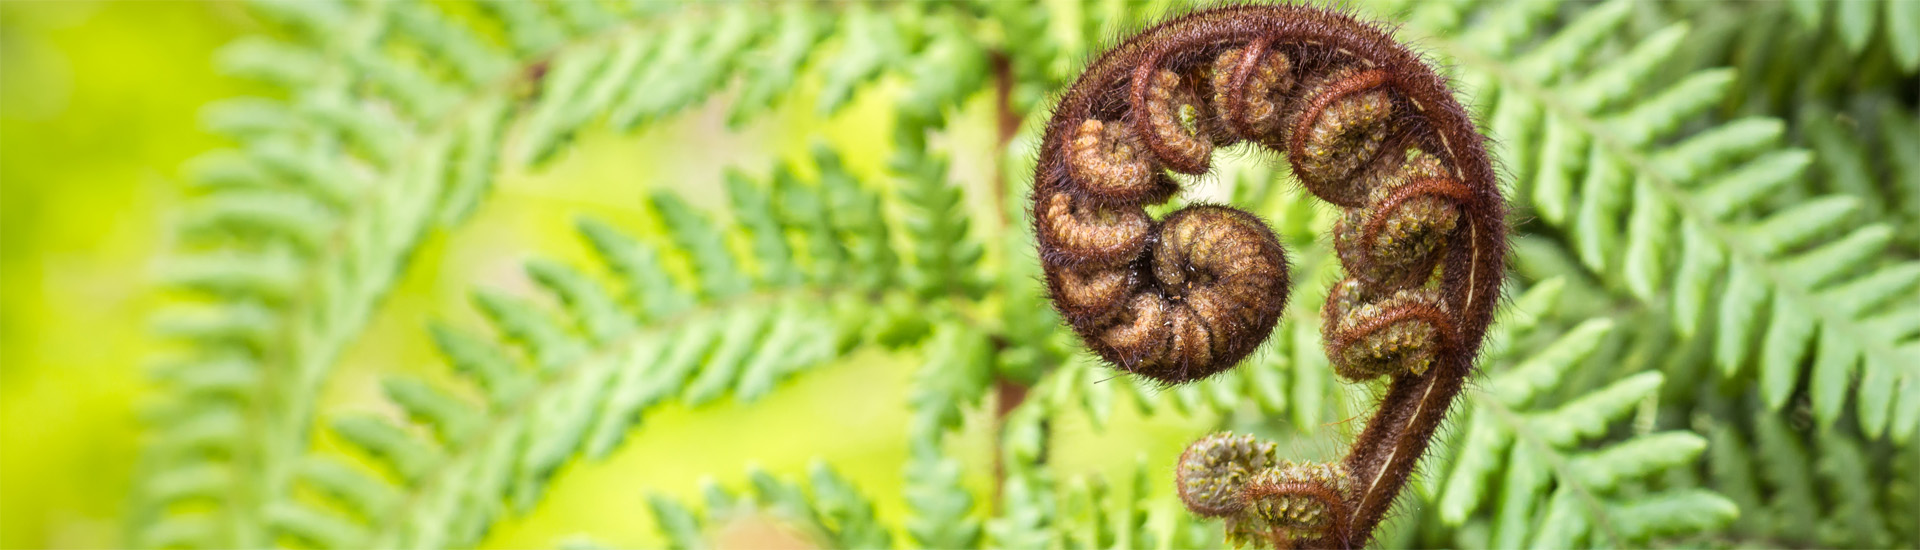 Close up of wheki tree fern frond koru